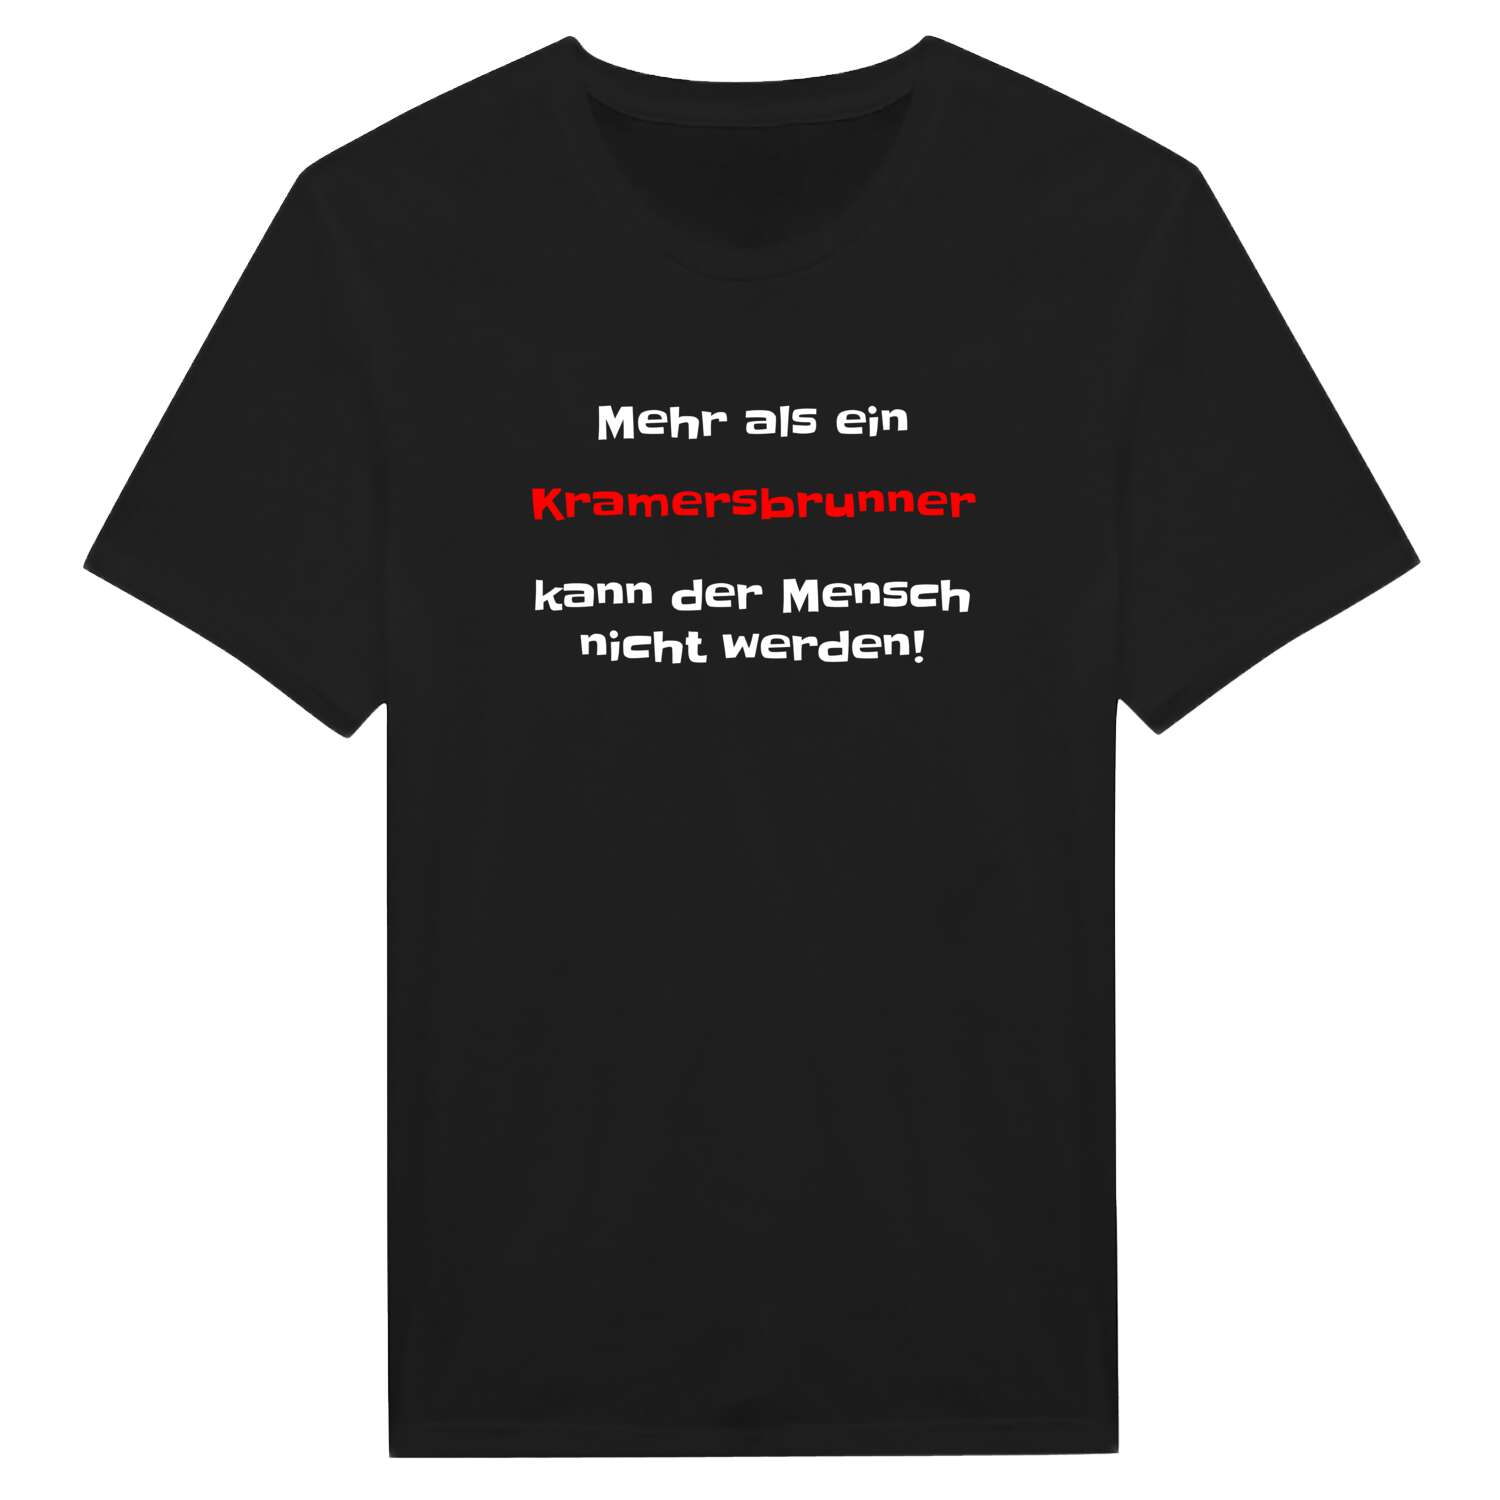 Kramersbrunn T-Shirt »Mehr als ein«